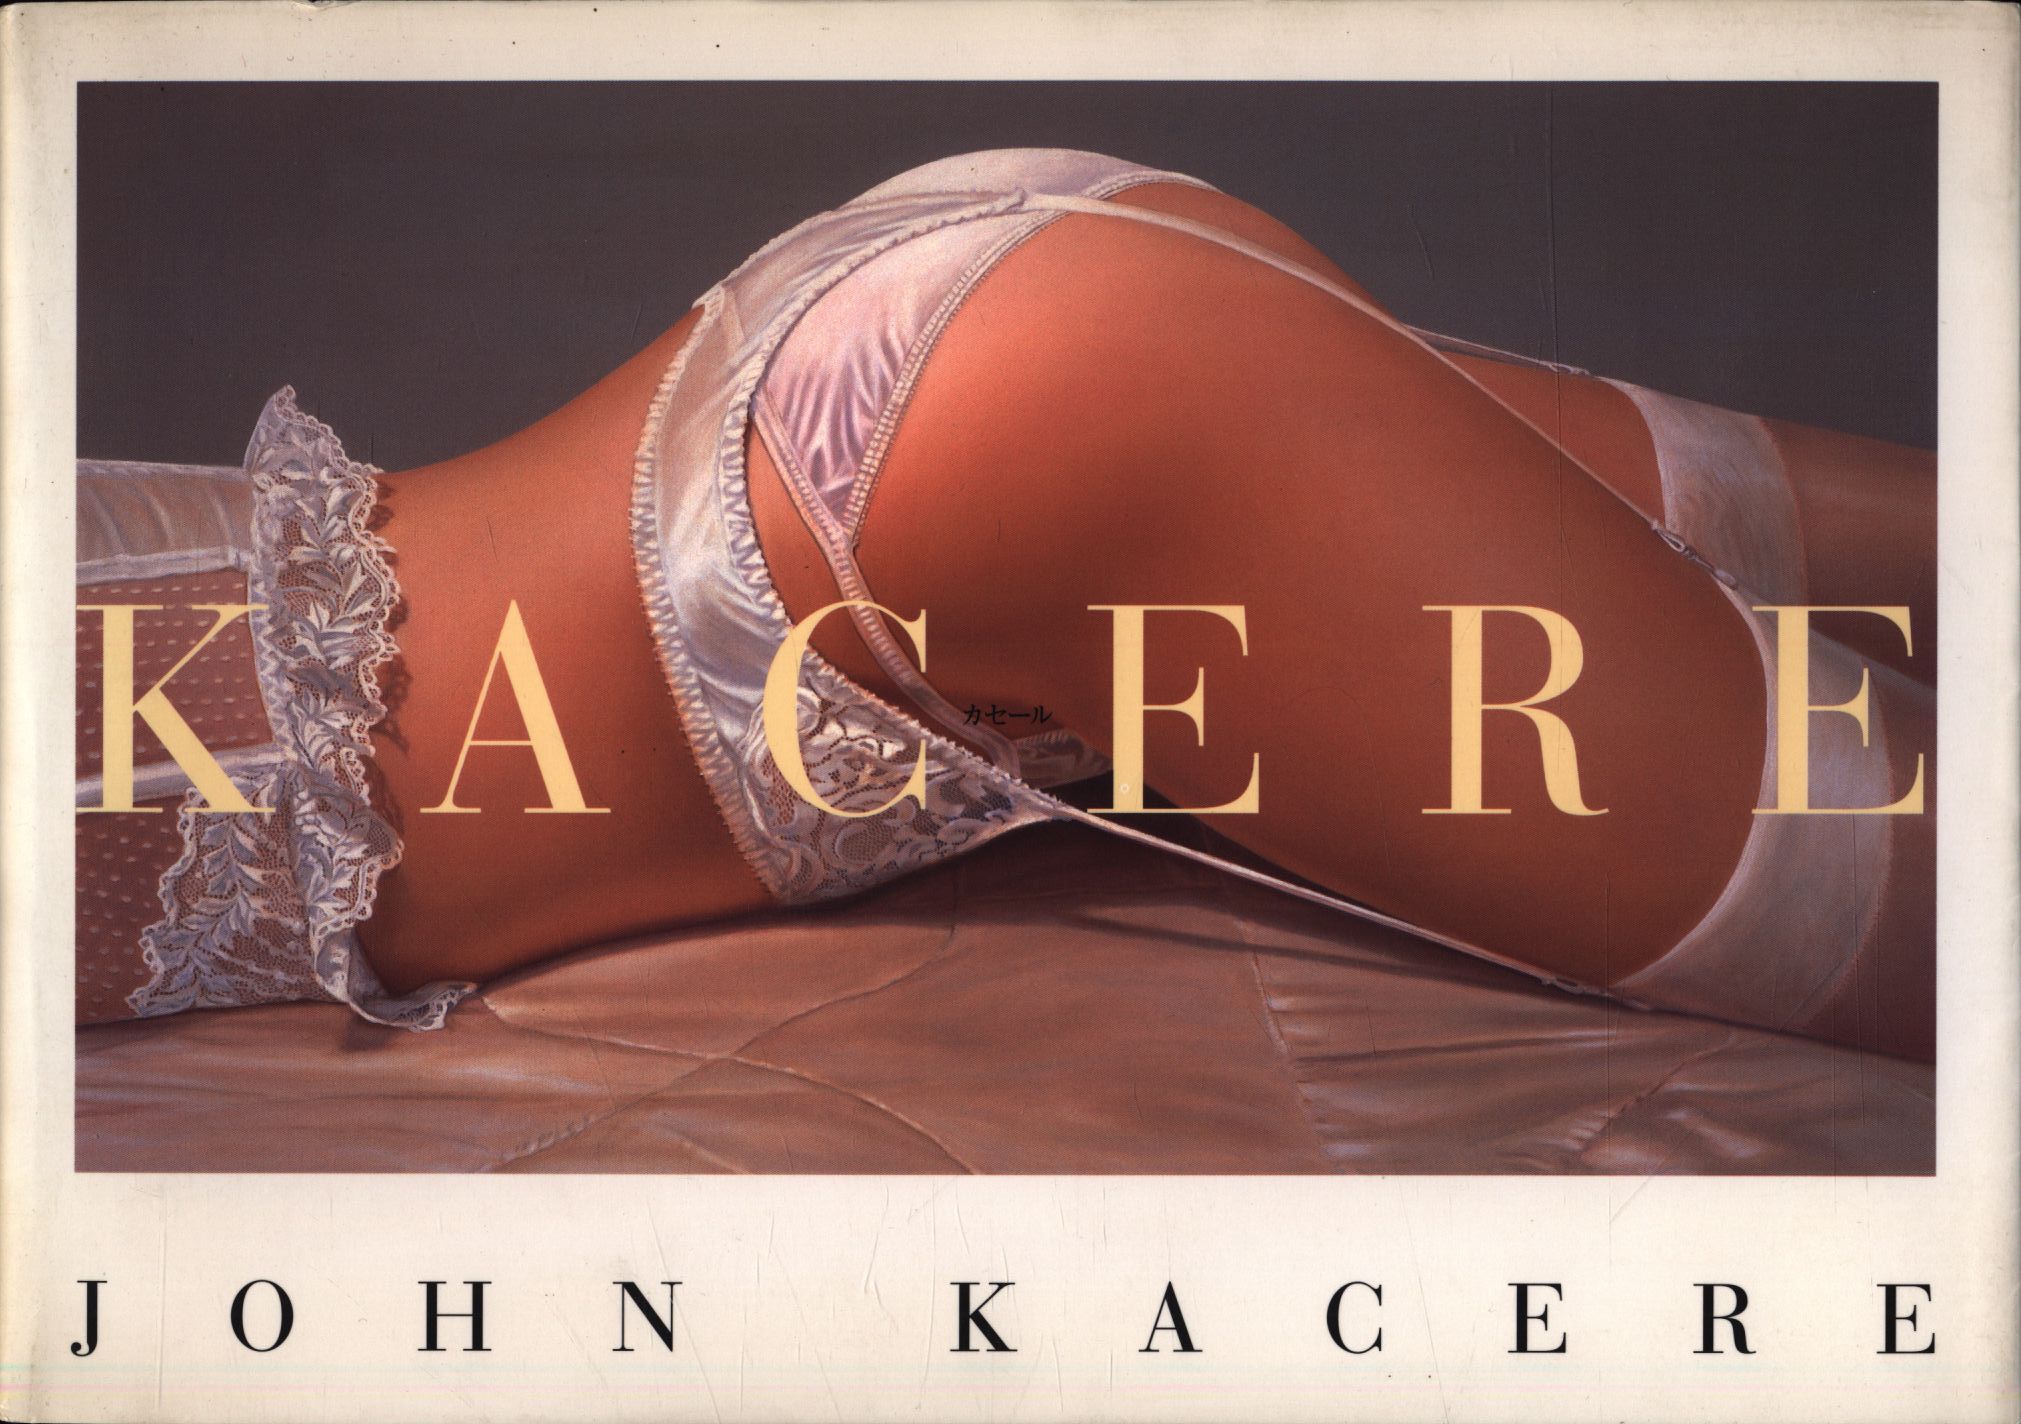 ジョン カセール KACERE images of erotic art 初版 - 本